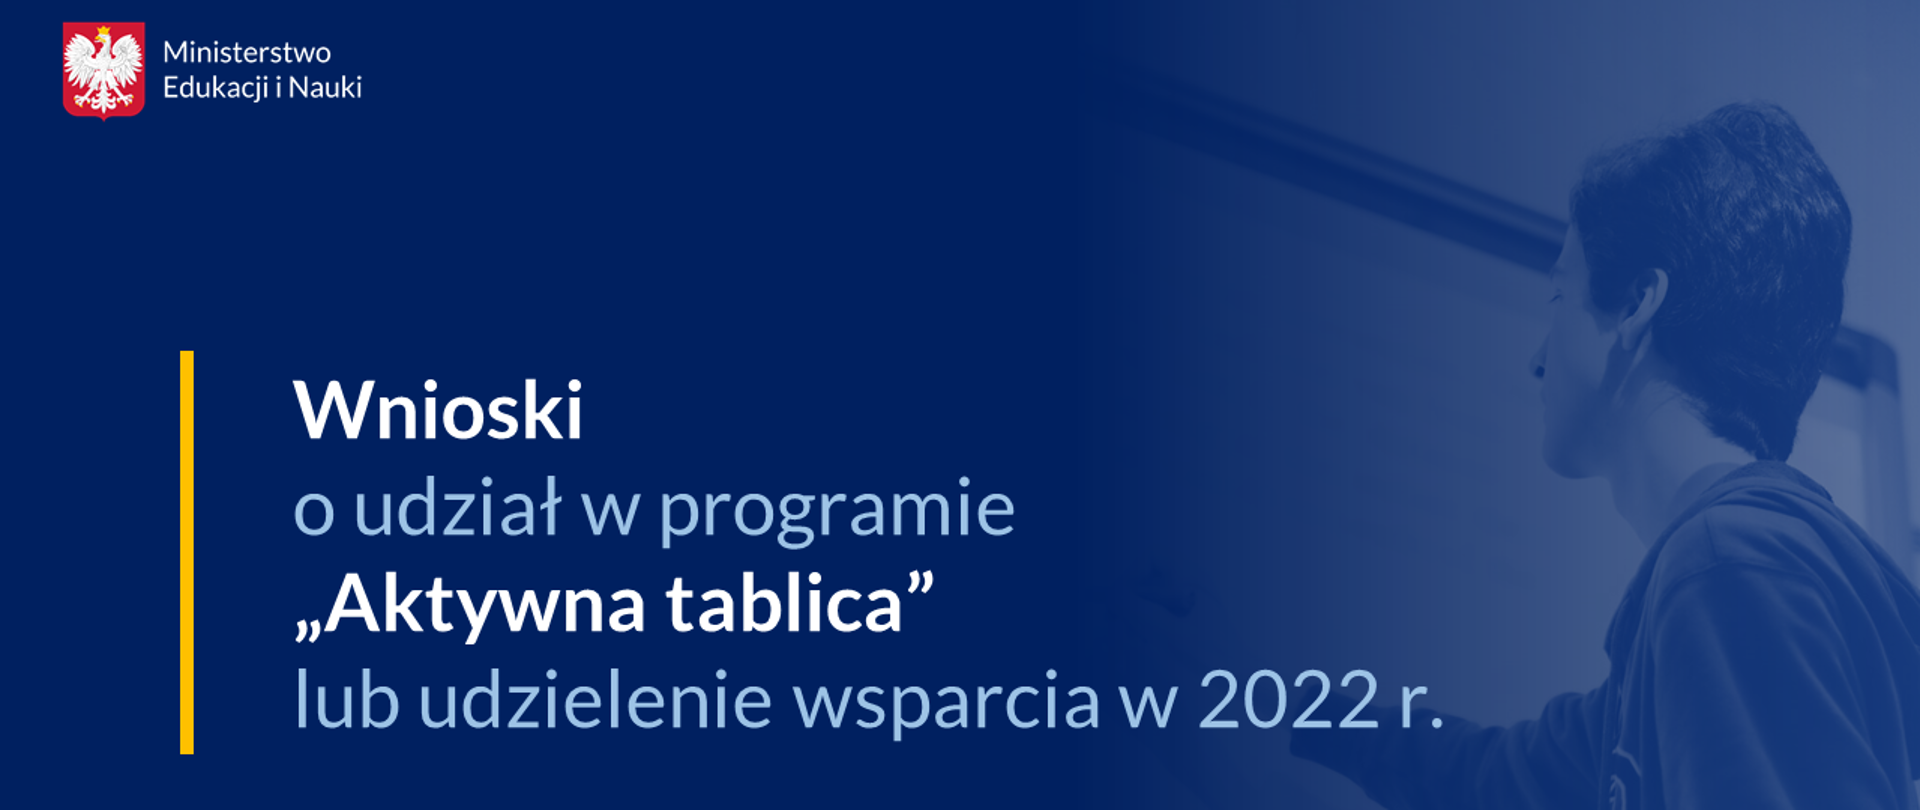 Wnioski o udział w programie Aktywna tablica lub udzielenie wsparcia w 2022 r.